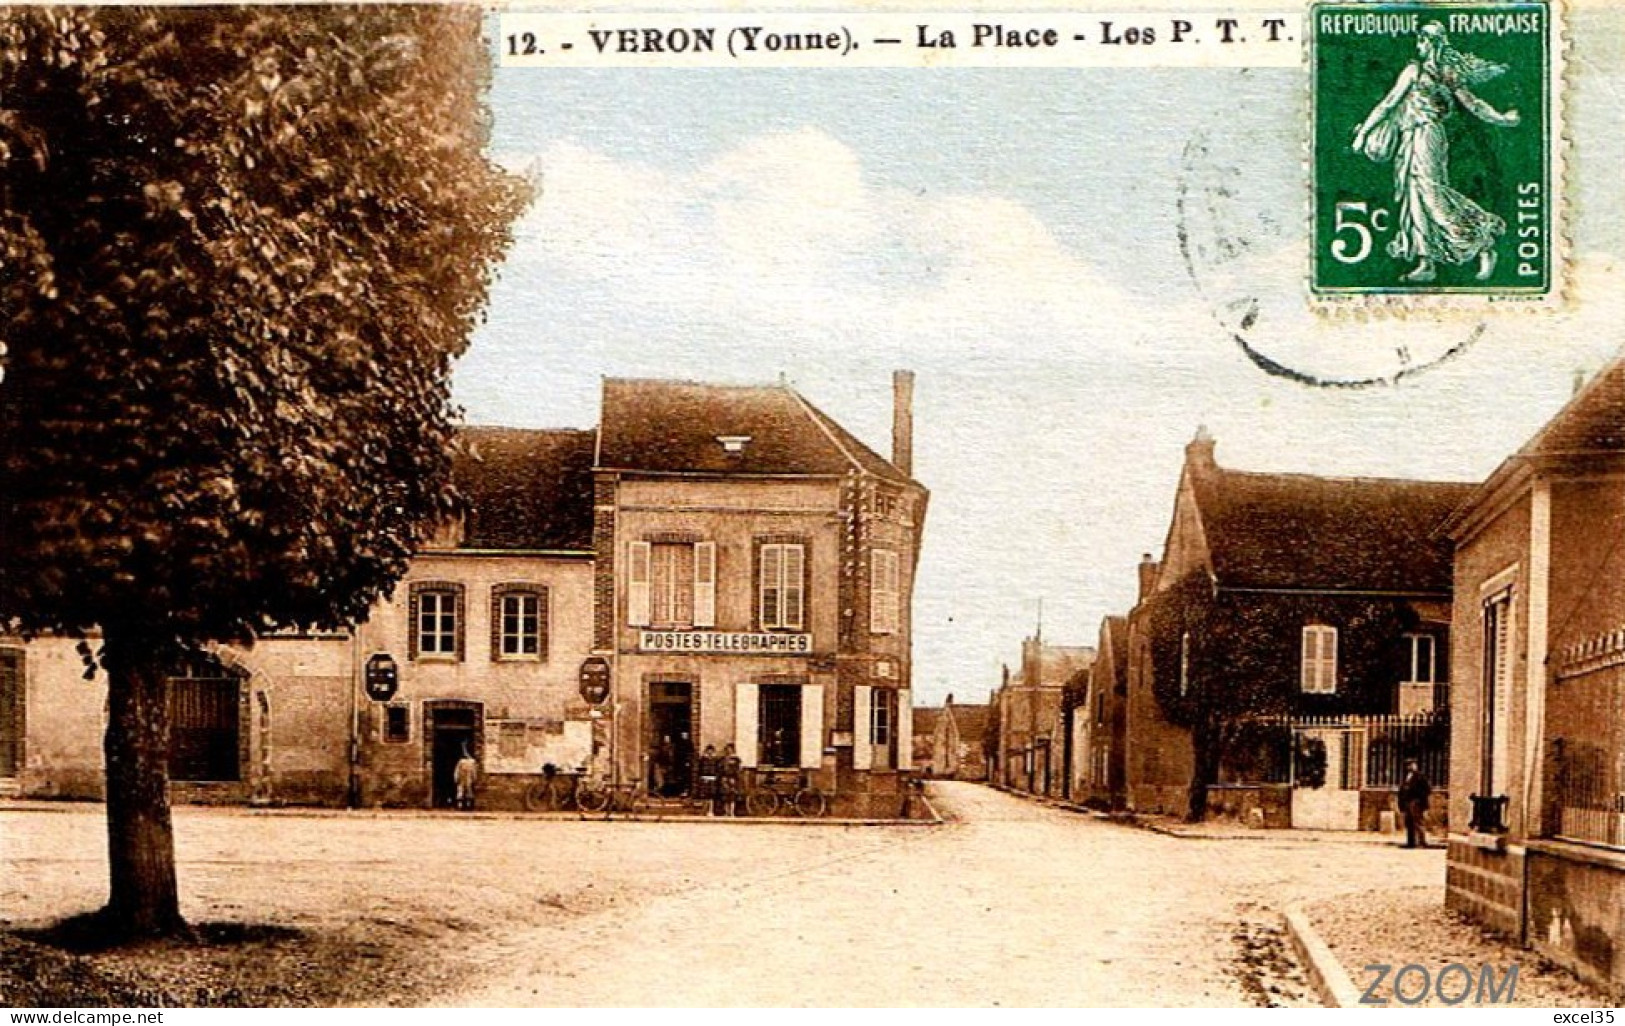 89 VERON - LA PLACE, LES P.T.T. - CPA GP Colorisée V RR Devanture Postes Télégraphes PTT - Veron